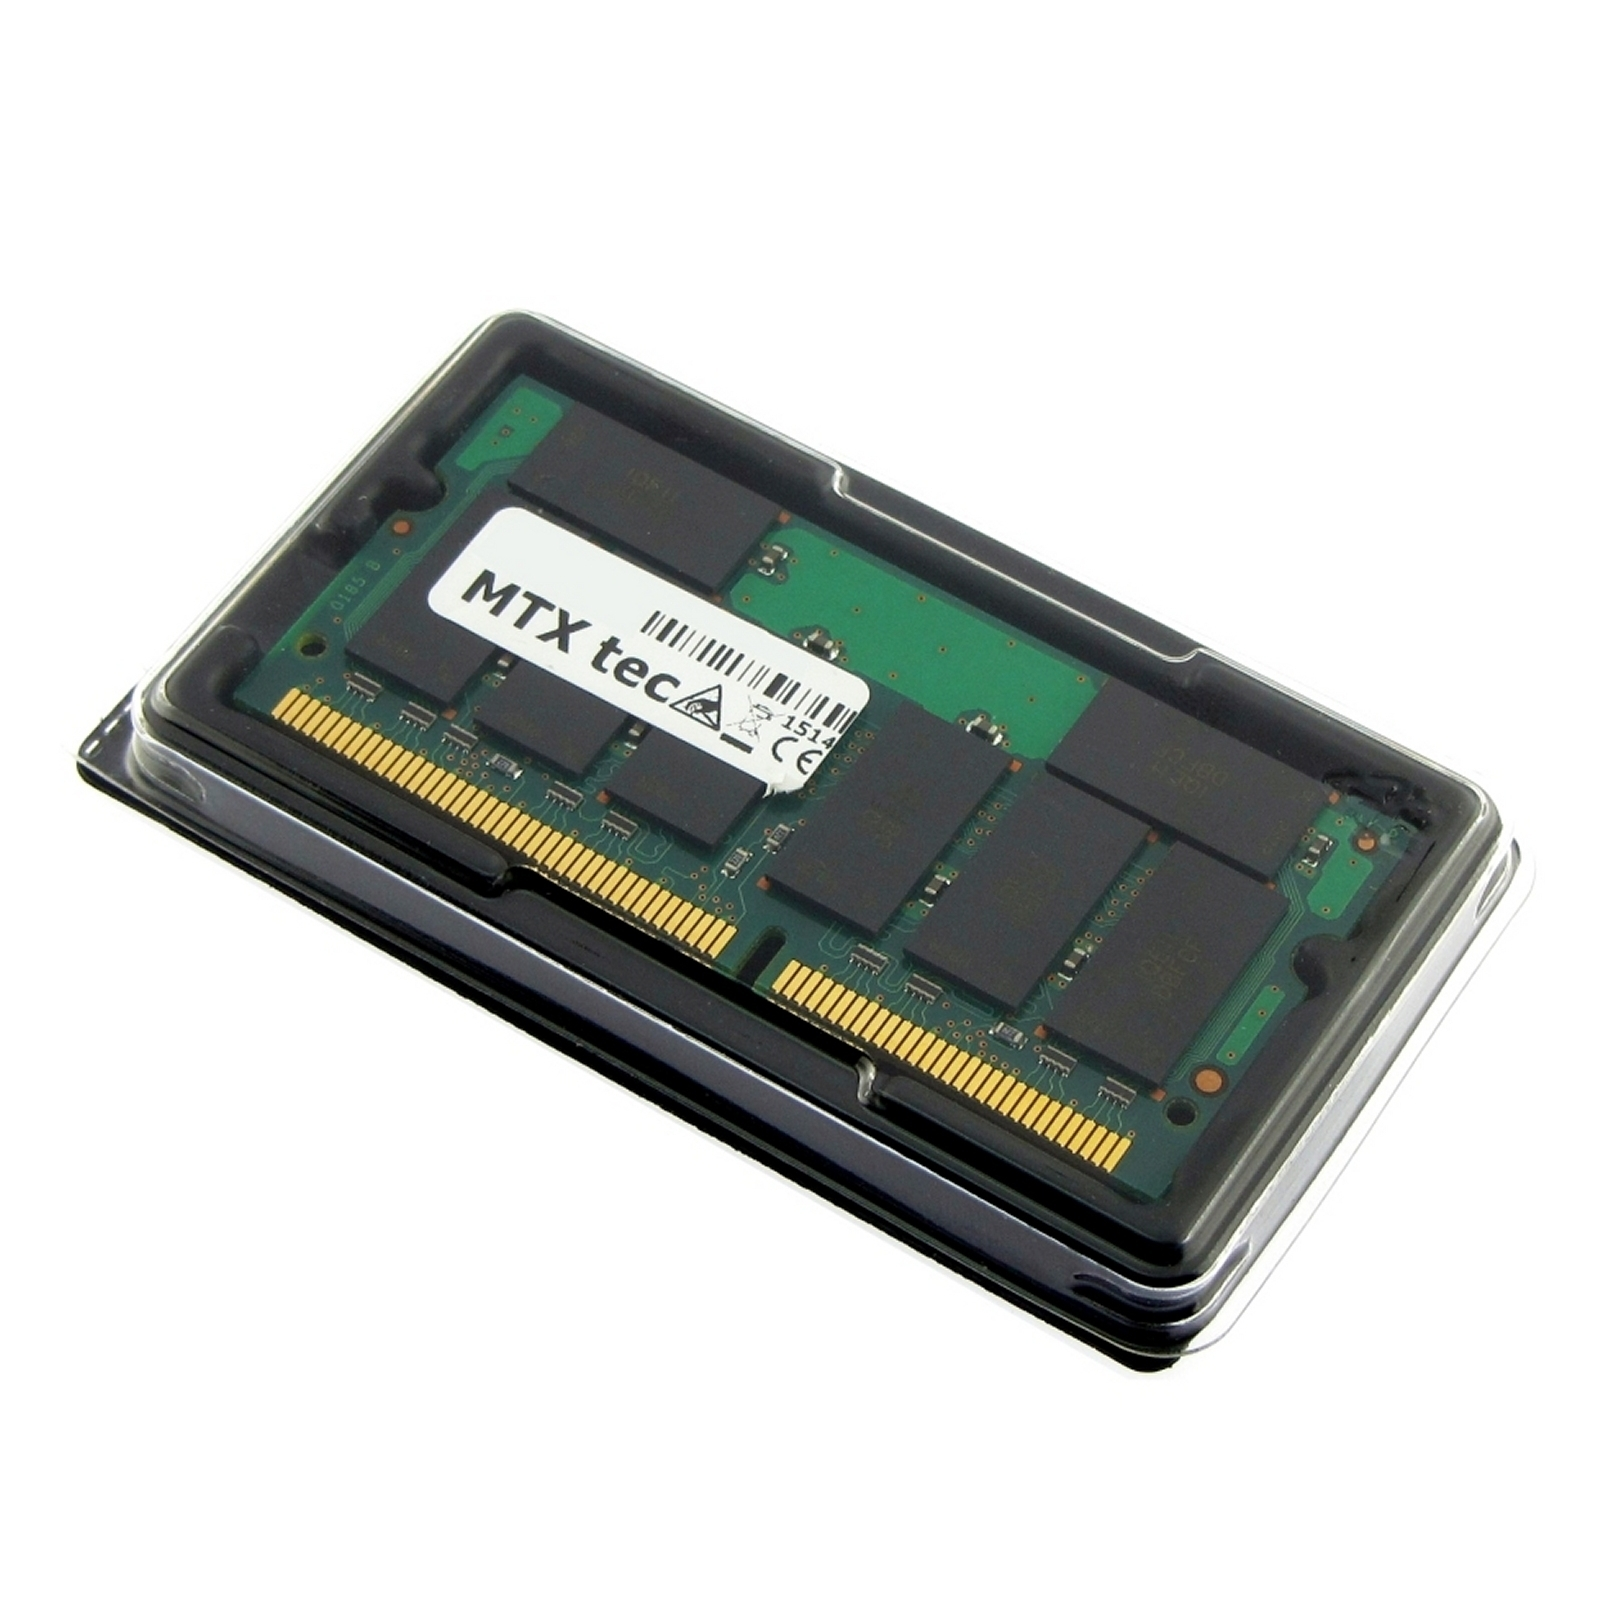 MTXTEC Arbeitsspeicher 512 MB SDRAM N410C COMPAQ 512 RAM Notebook-Speicher Evo MB für